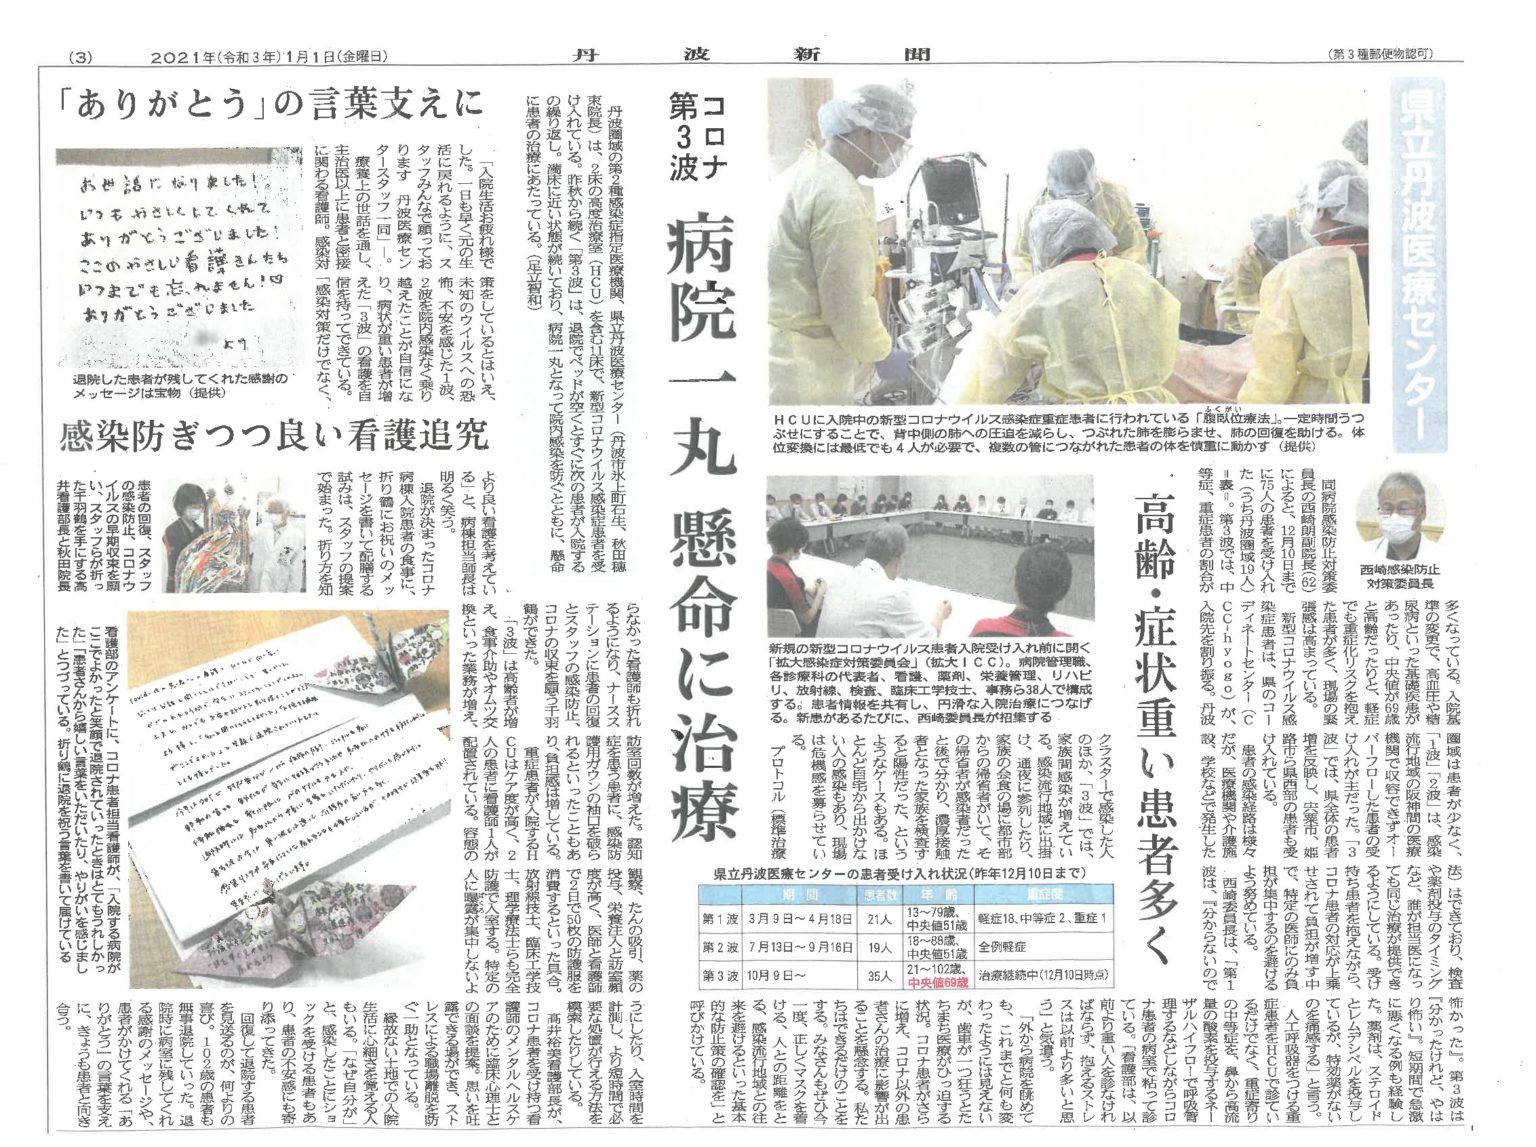 当院での新型コロナウイルス感染症患者の受け入れ状況が丹波新聞に掲載されました | 兵庫県立丹波医療センター